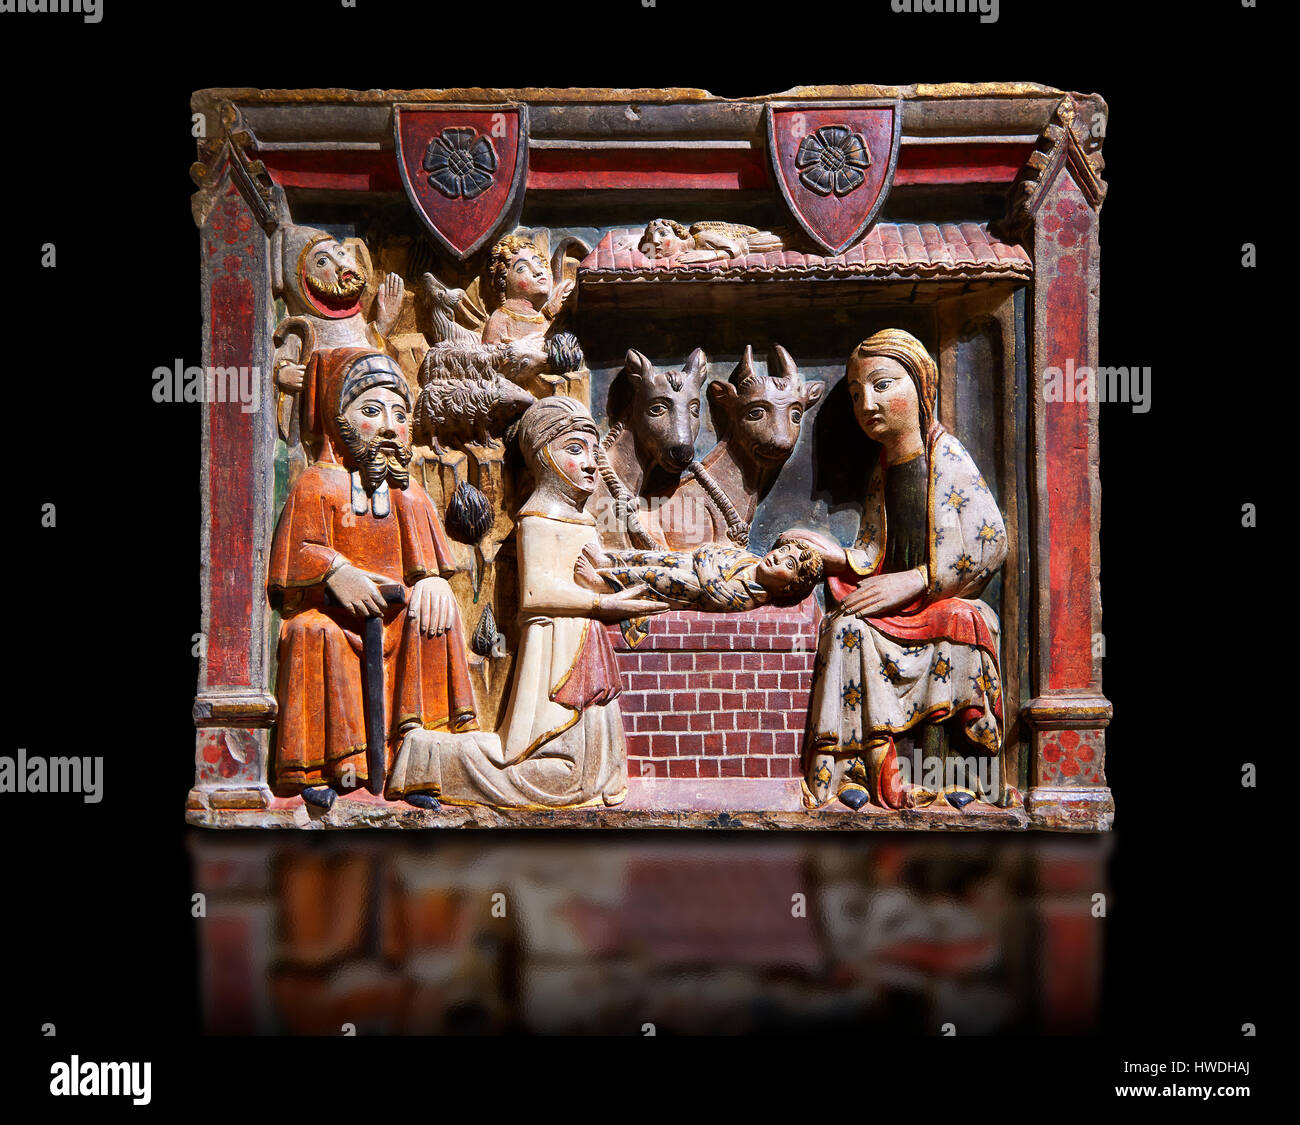 Gotisches Relief der Geburt Christi von Master Albesa gemalt. Nationales Museum für katalanische Kunst, Barcelona, Spanien, Inv keine: 017342-000 Stockfoto